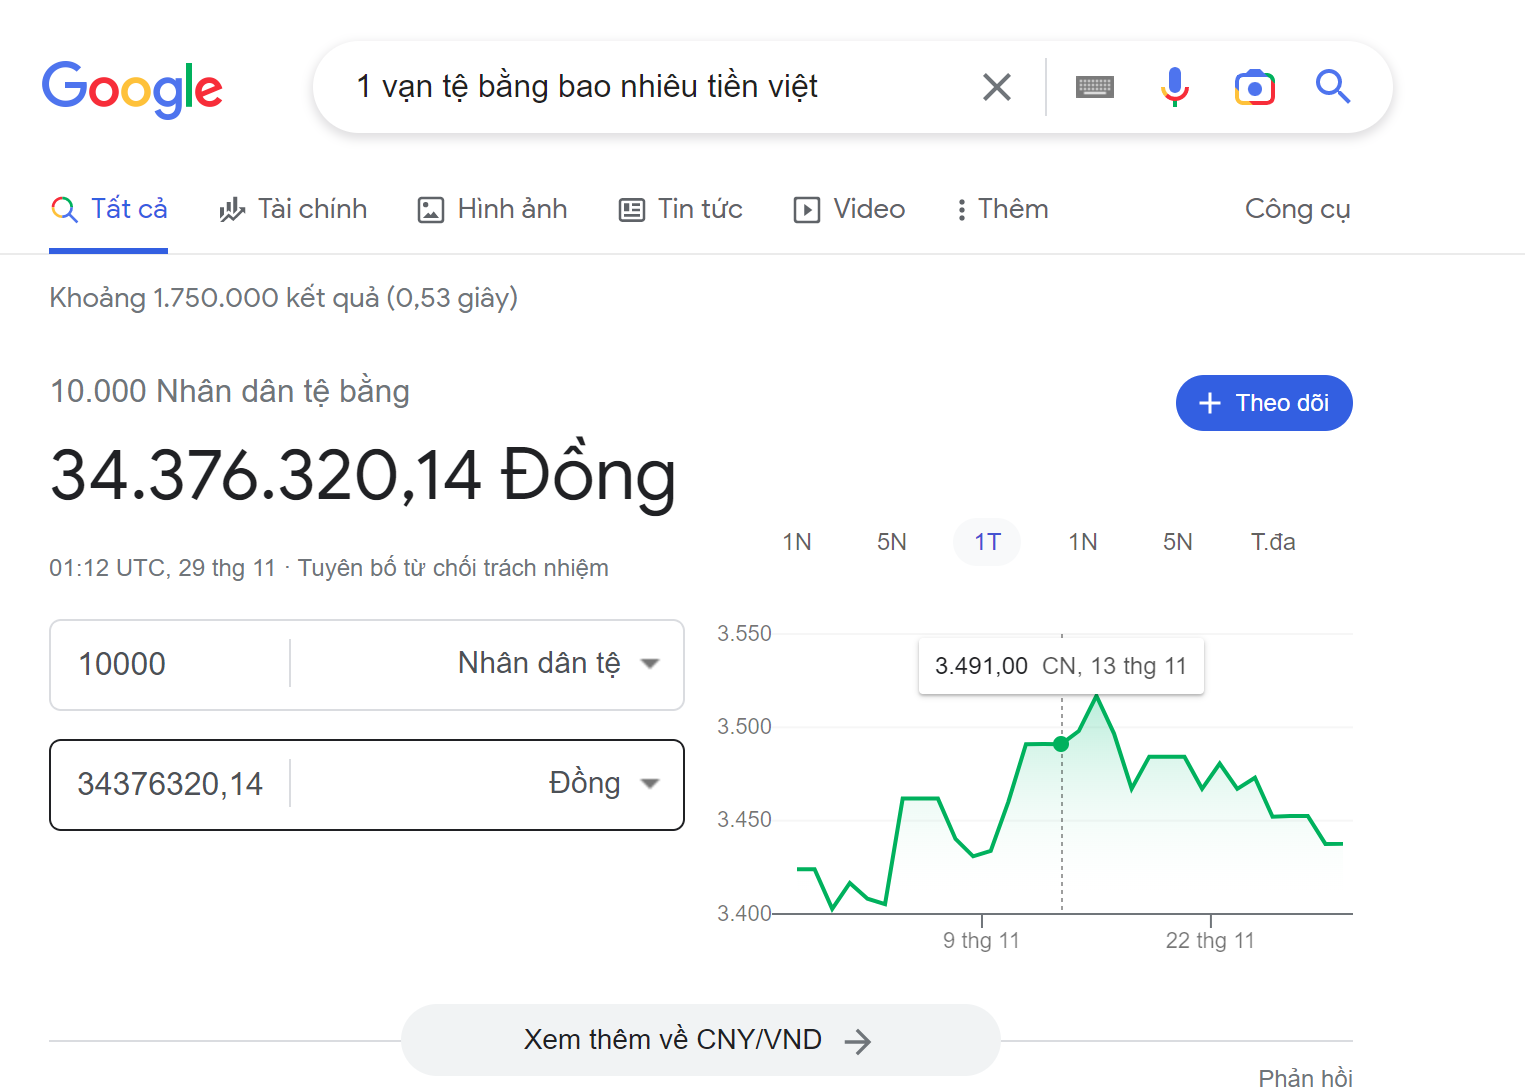 Các quy đổi tỷ giá 1 vạn tệ bằng bao nhiêu tiền Việt qua Google